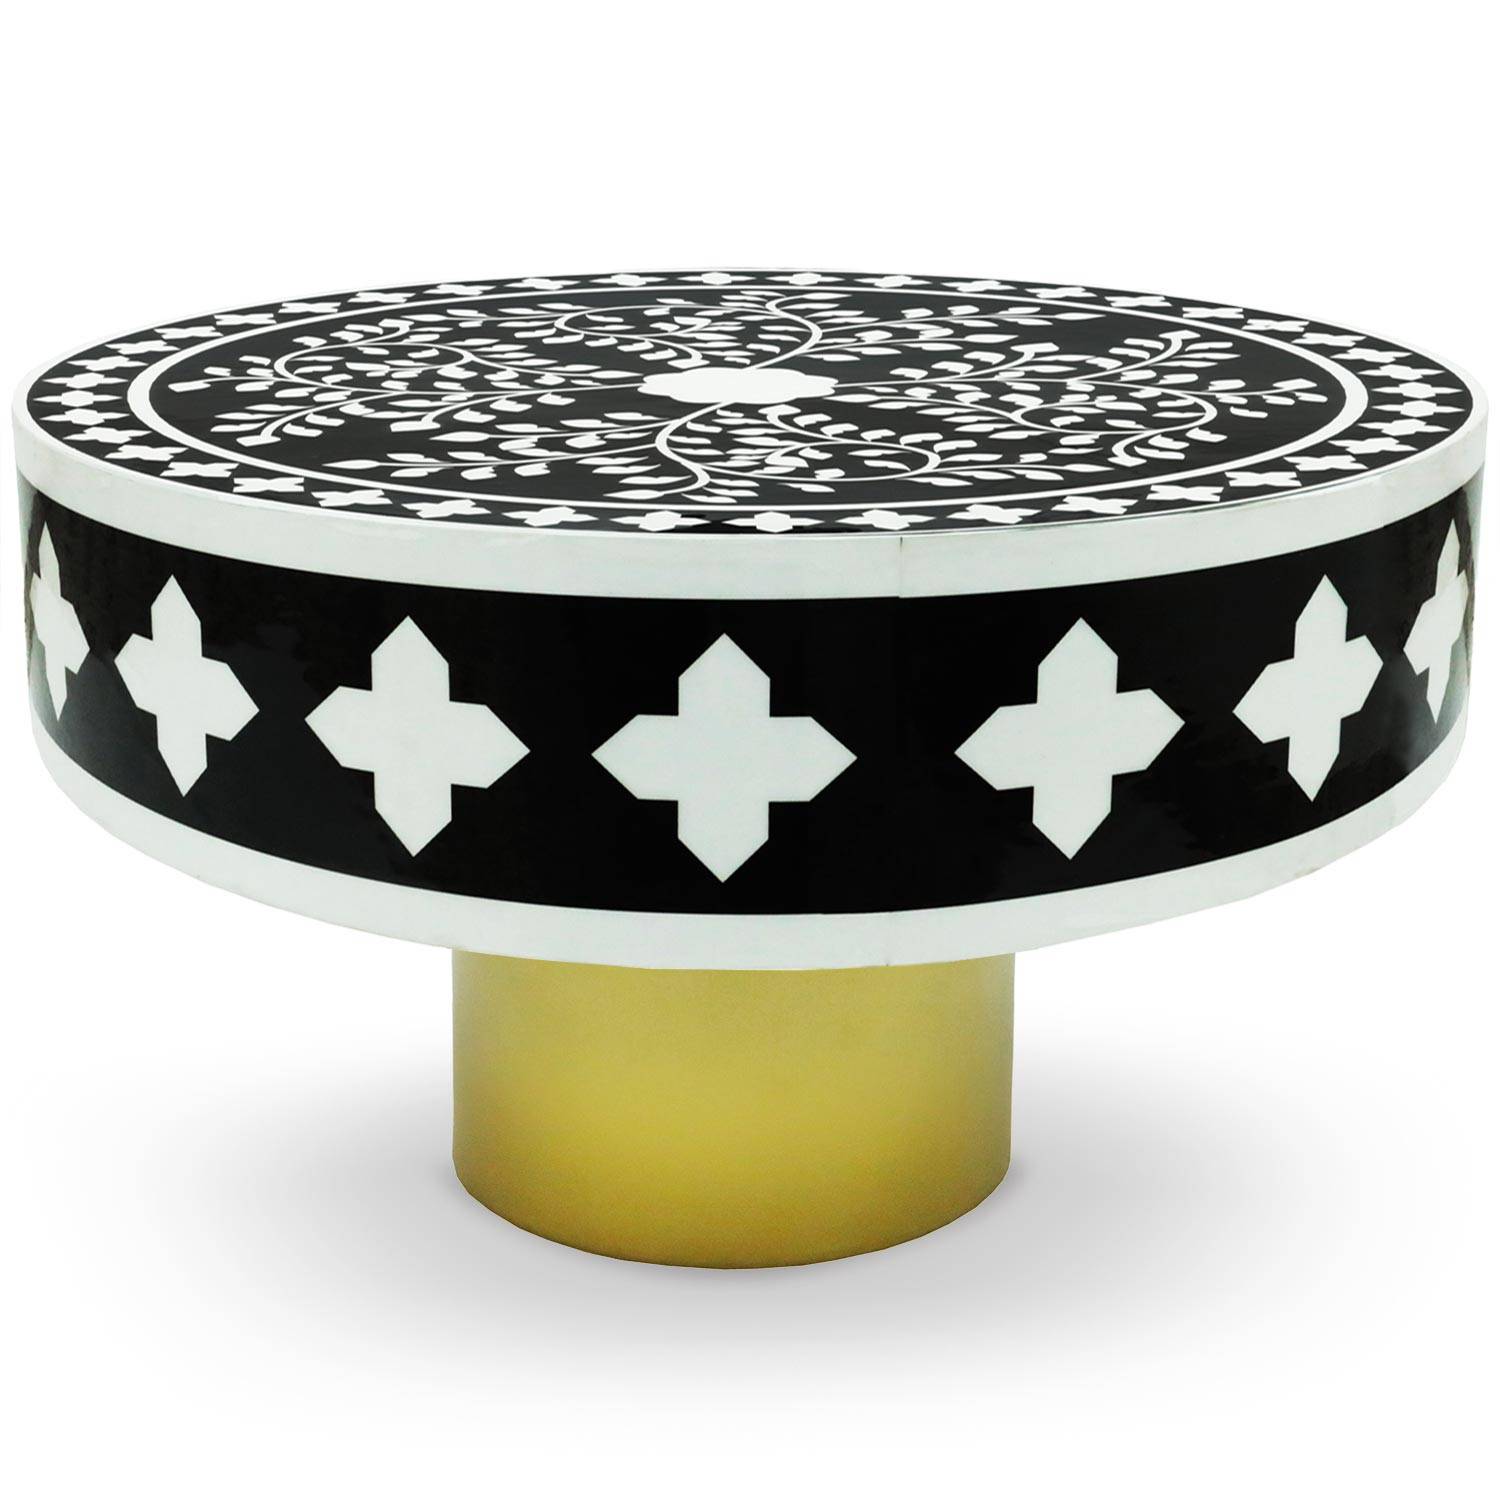 Mesa de centro redonda de estilo arty Ø71cm Viliana Motivo vegetal blanco y negro y base dorada